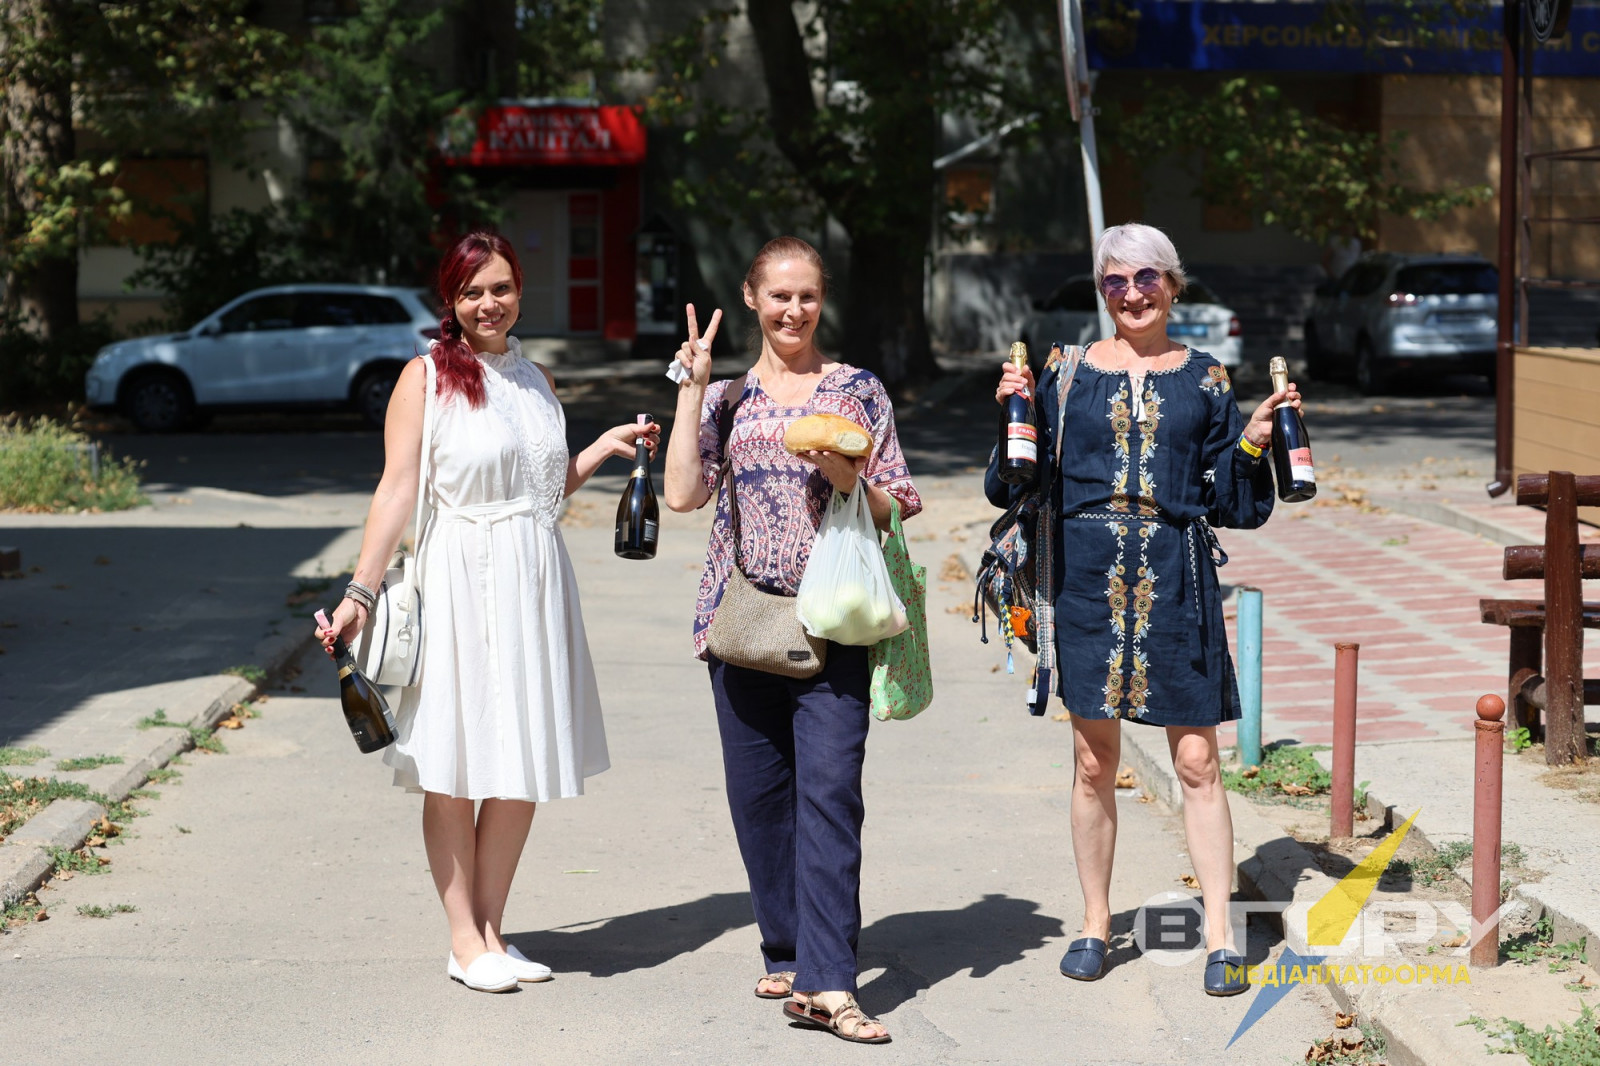 Херсонці, як і більшість українців, продовжують вражати світ невичерпним оптимізмом. Тут свята залишаються святами навіть в зоні бойових дій.